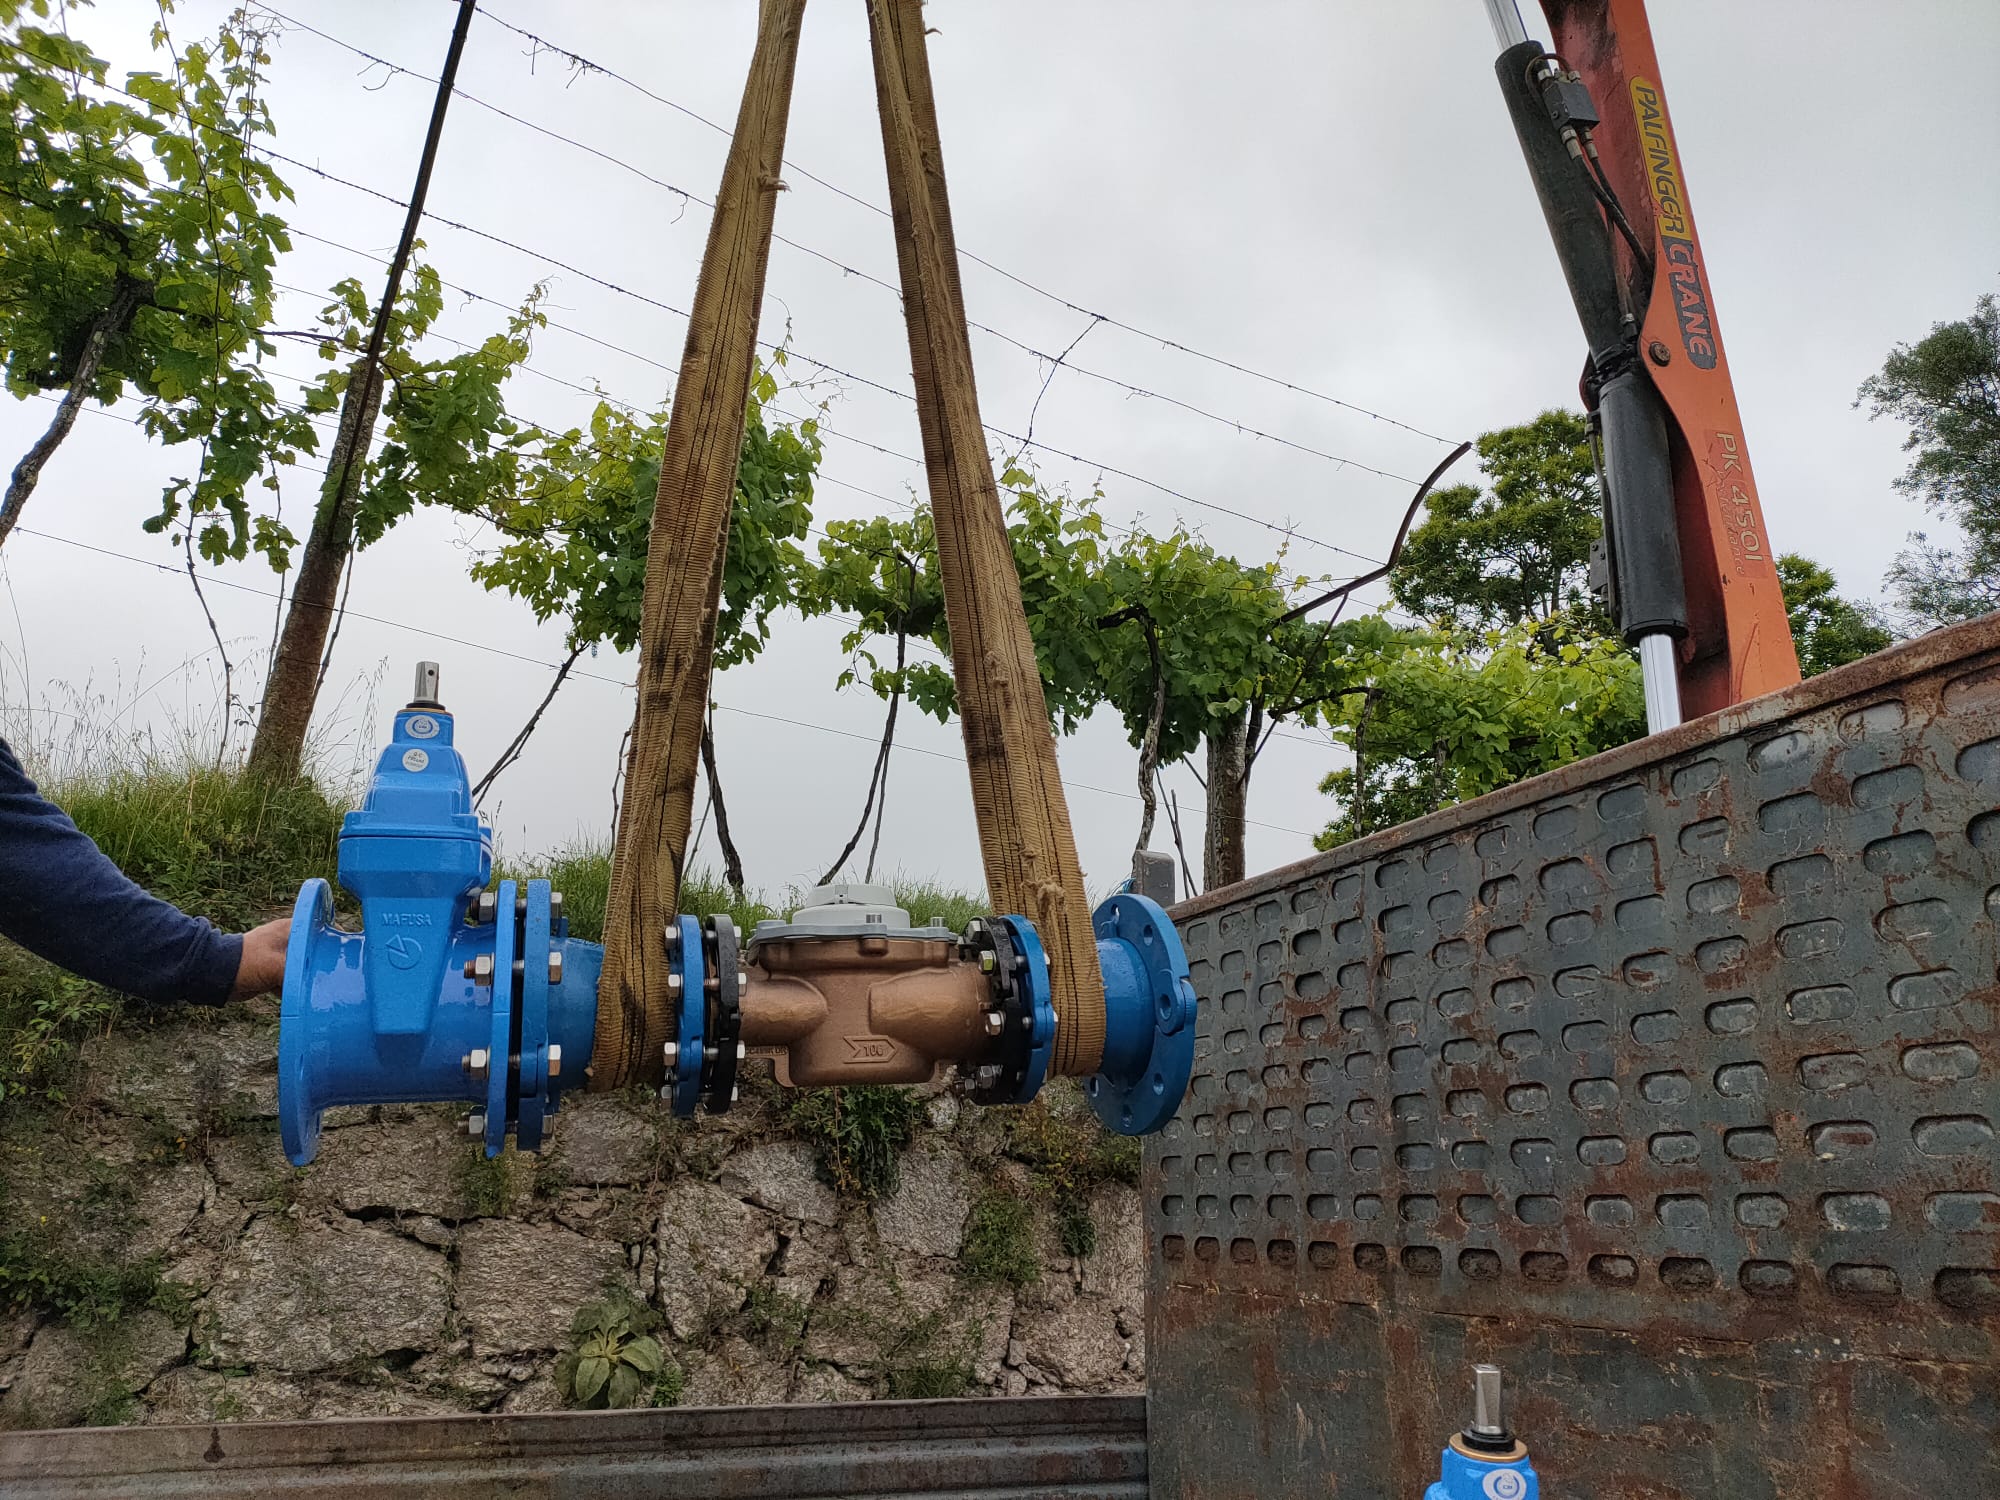 Reservatórios de Morilhões e de Silvares, em Arcos de Valdevez, no bom caminho para a eficiência hídrica